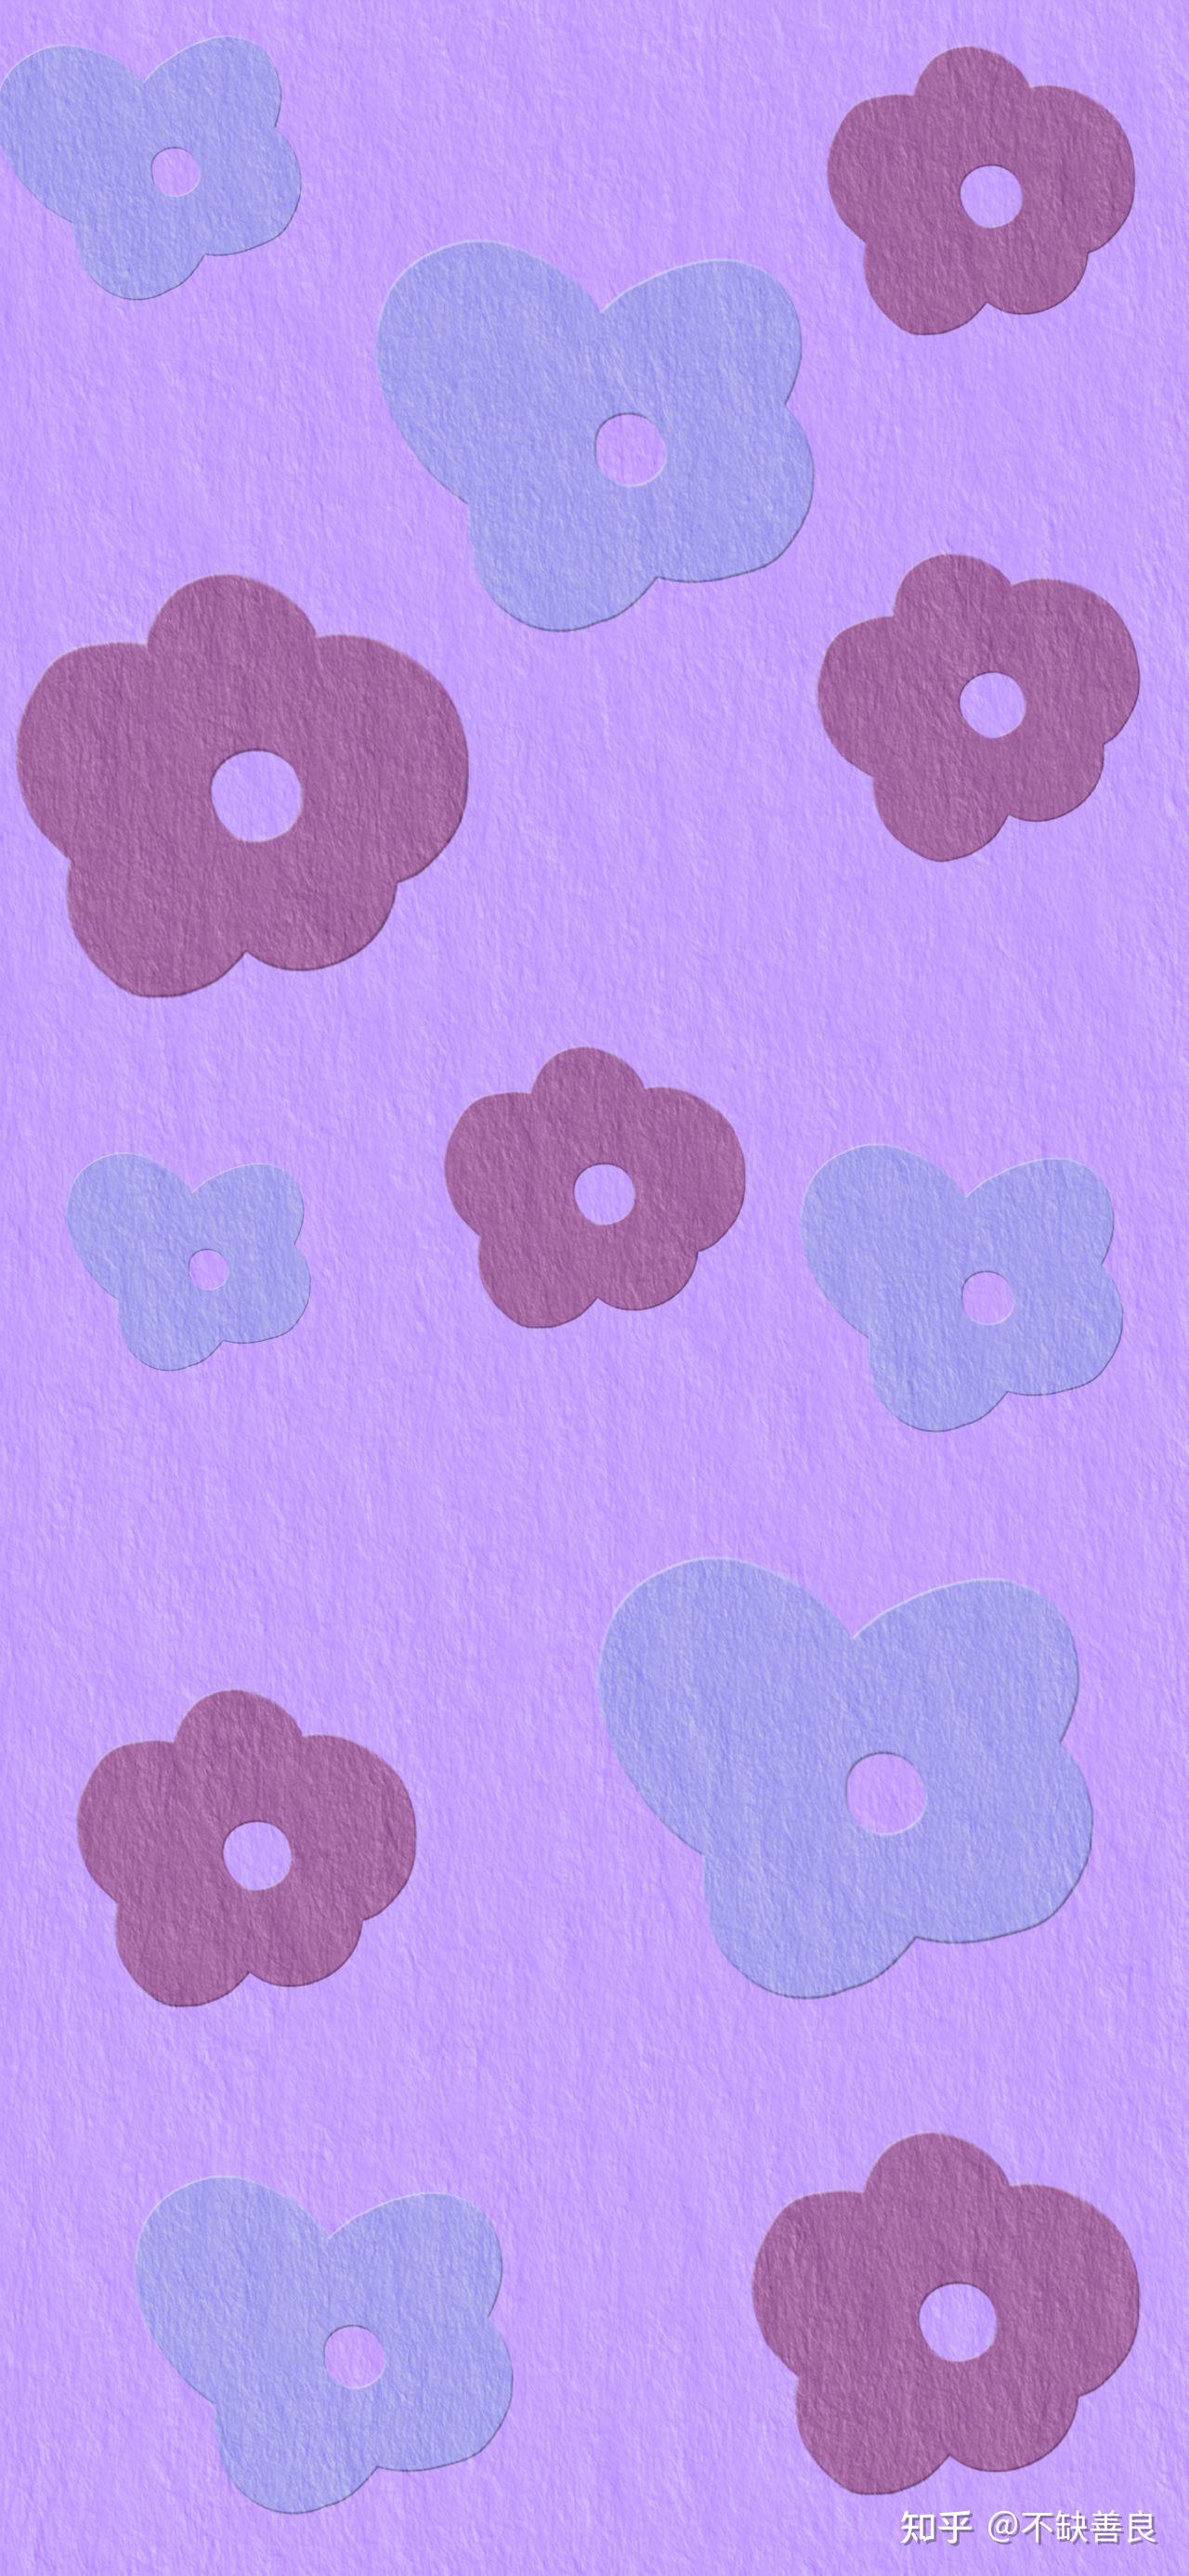 今日份是温柔的紫色壁纸嗷!